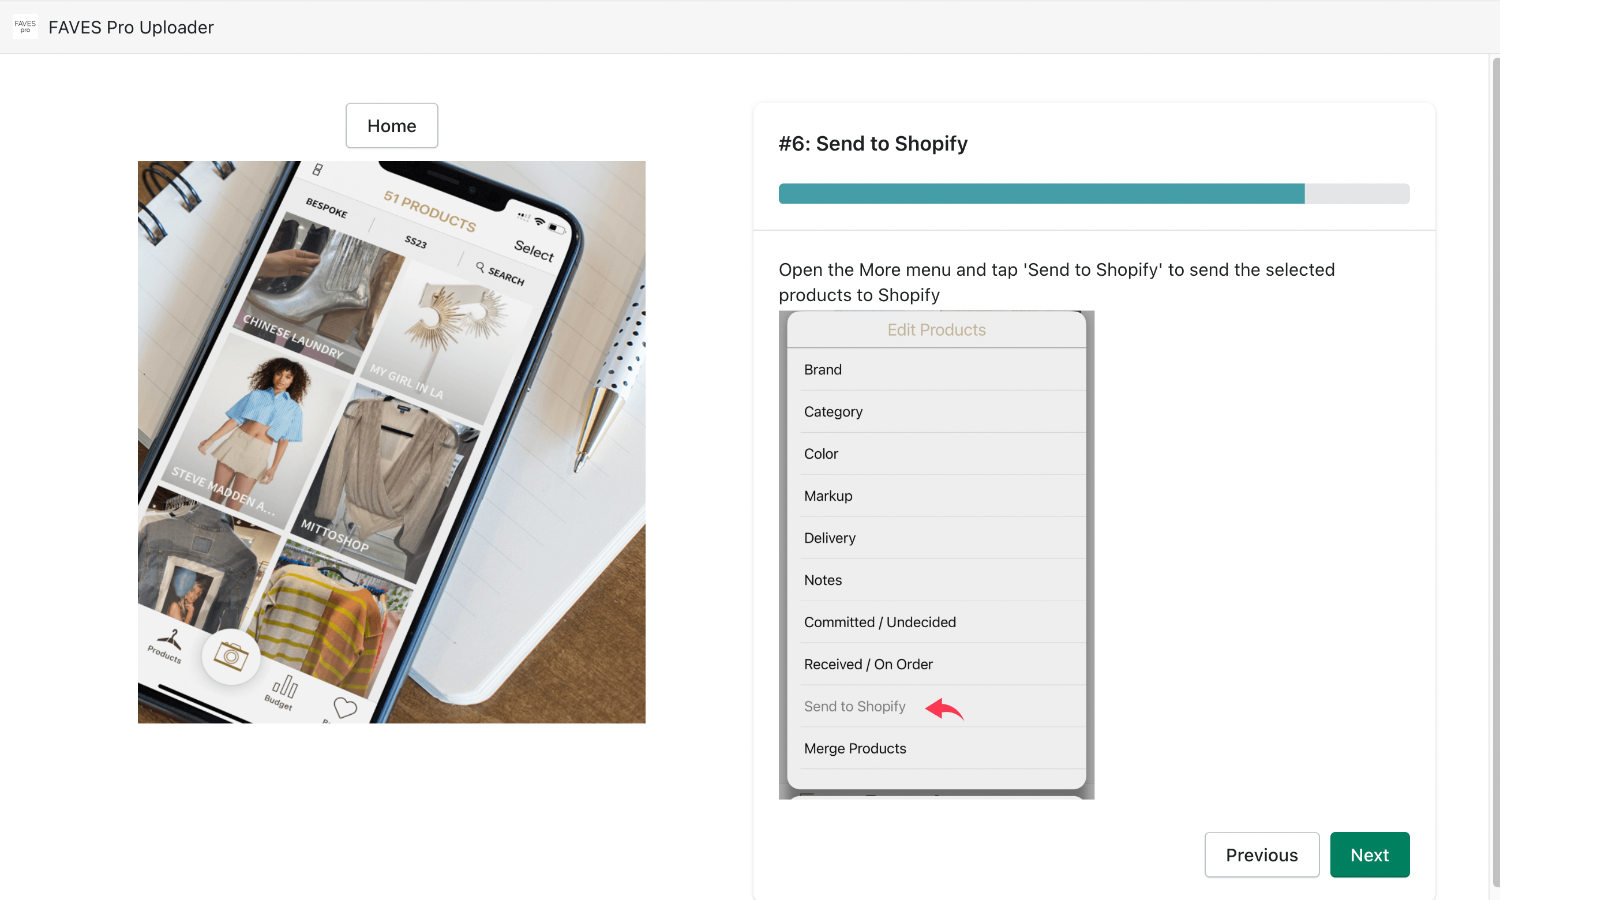 Billede der viser hvordan man vælger Upload til Shopify kommandoen